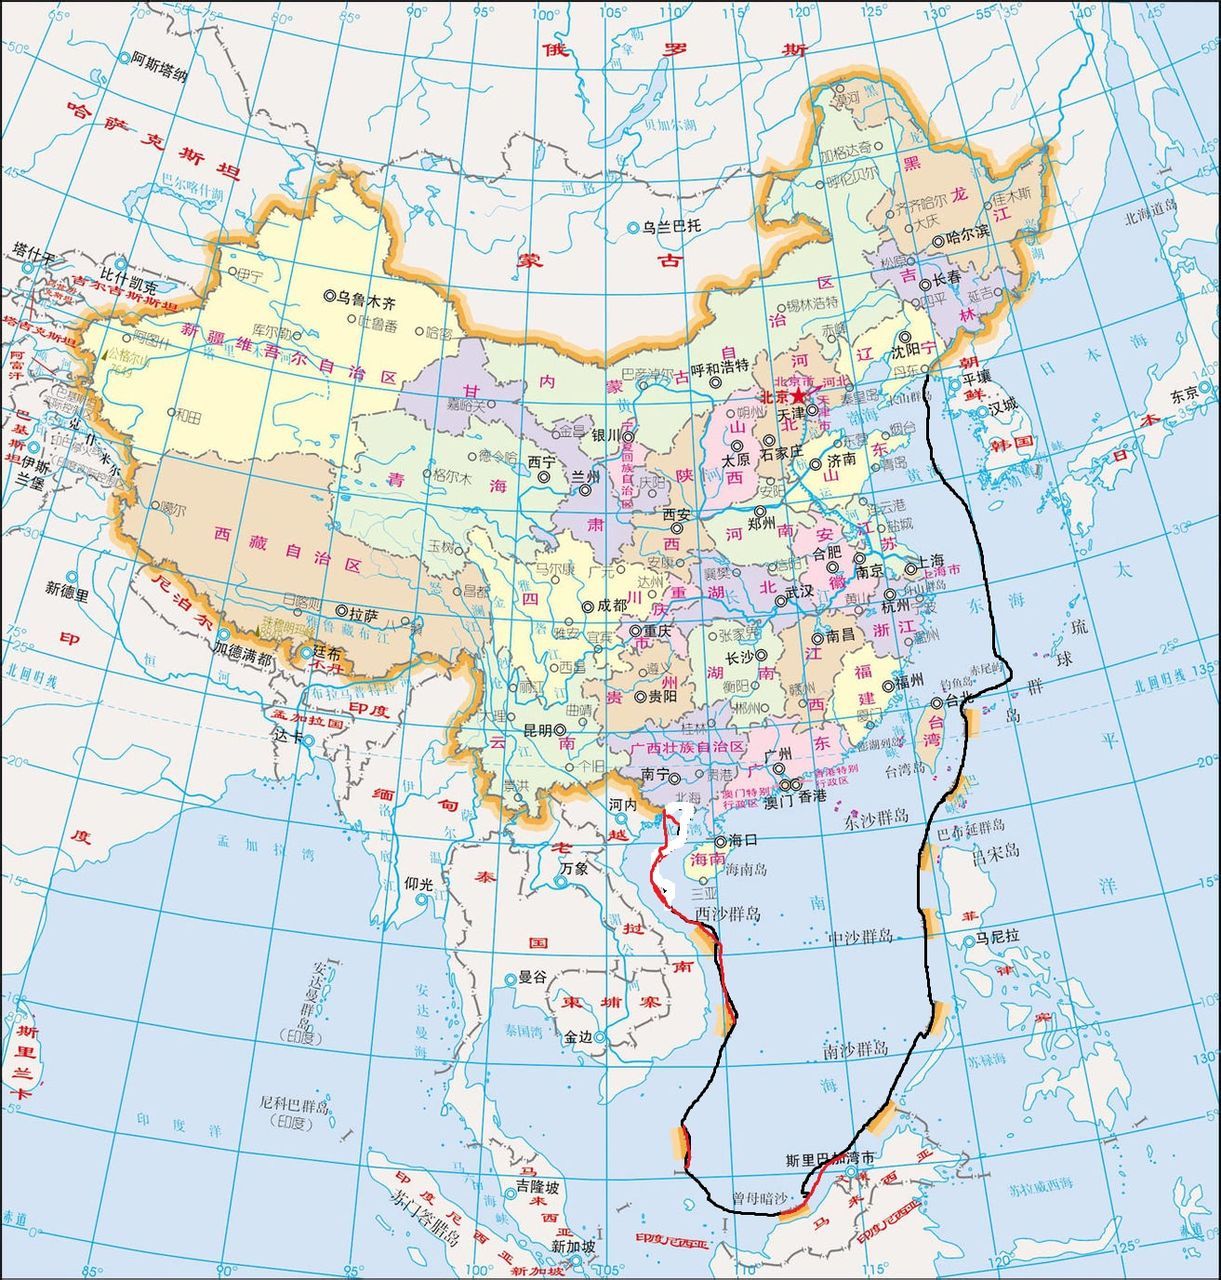 中国海域划分界限图片